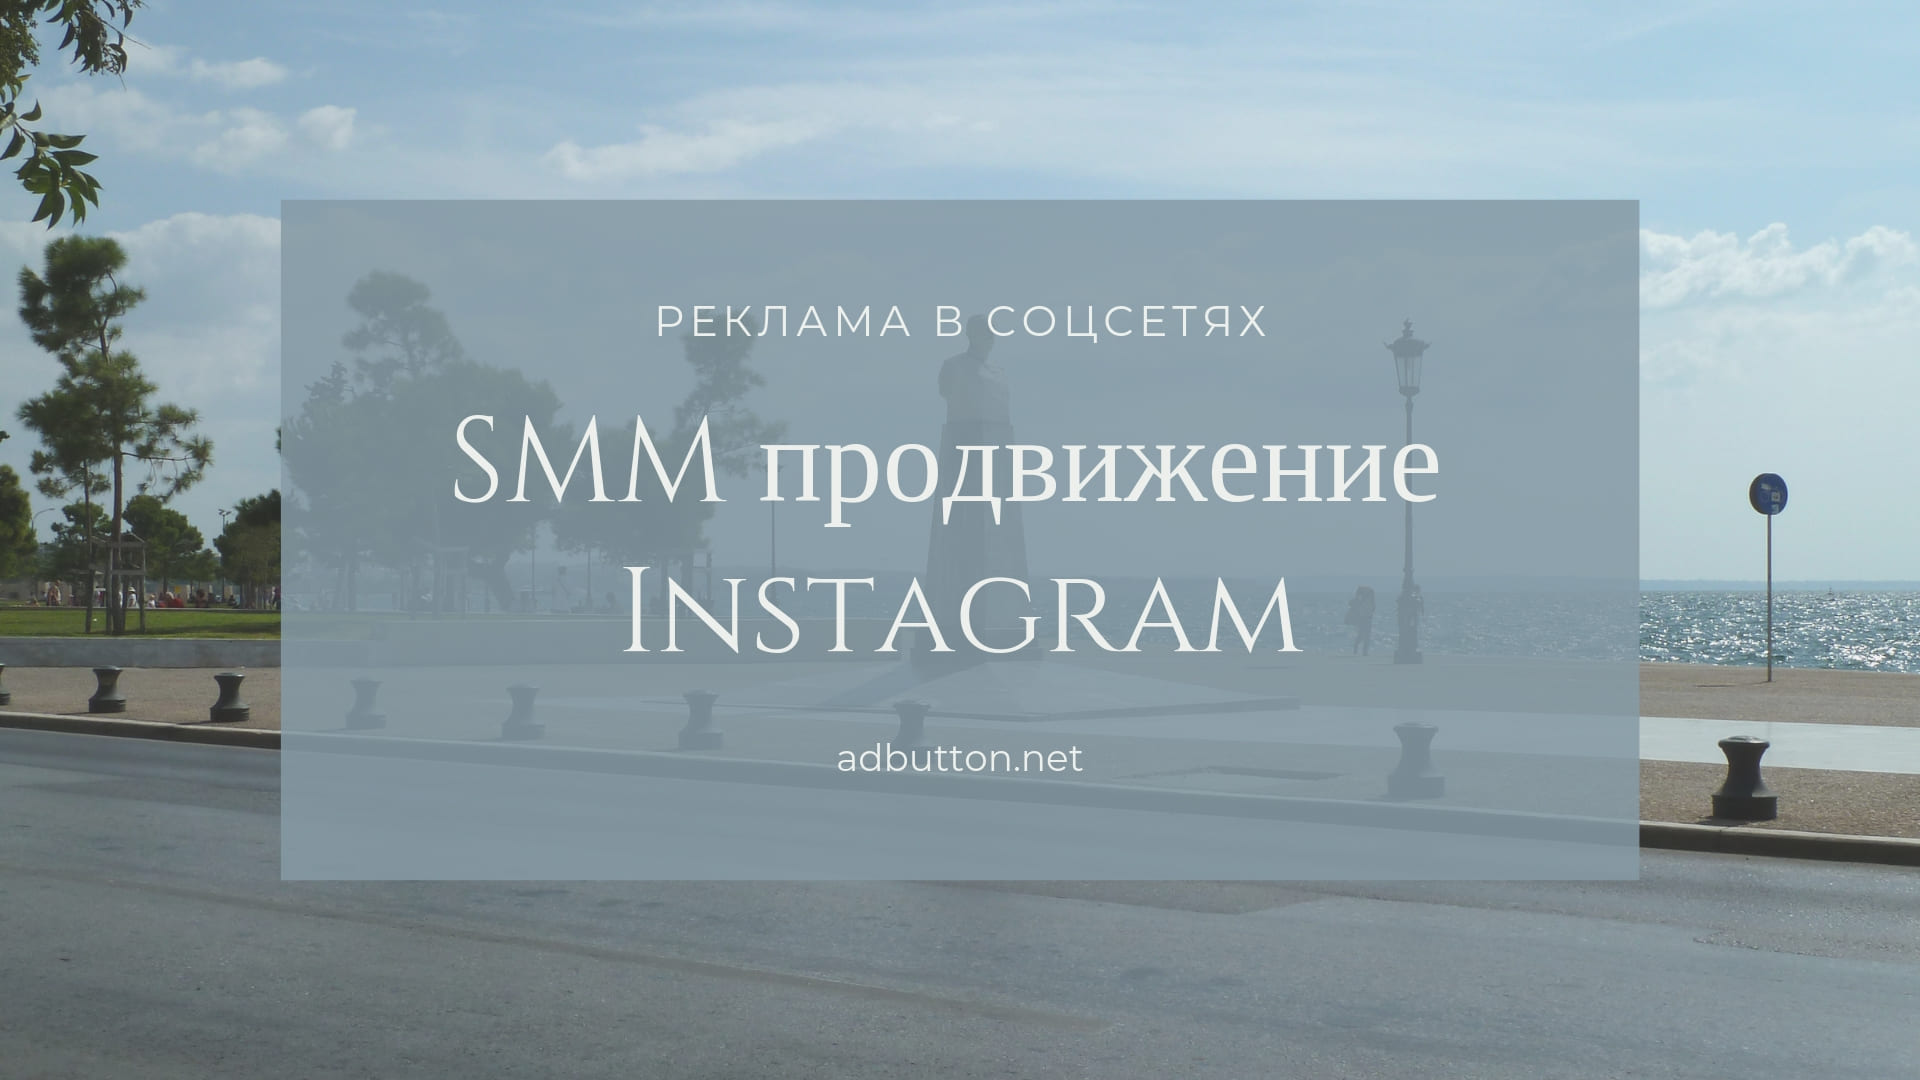 SMM продвижение Instagram: получить и увеличить количество подписчиков